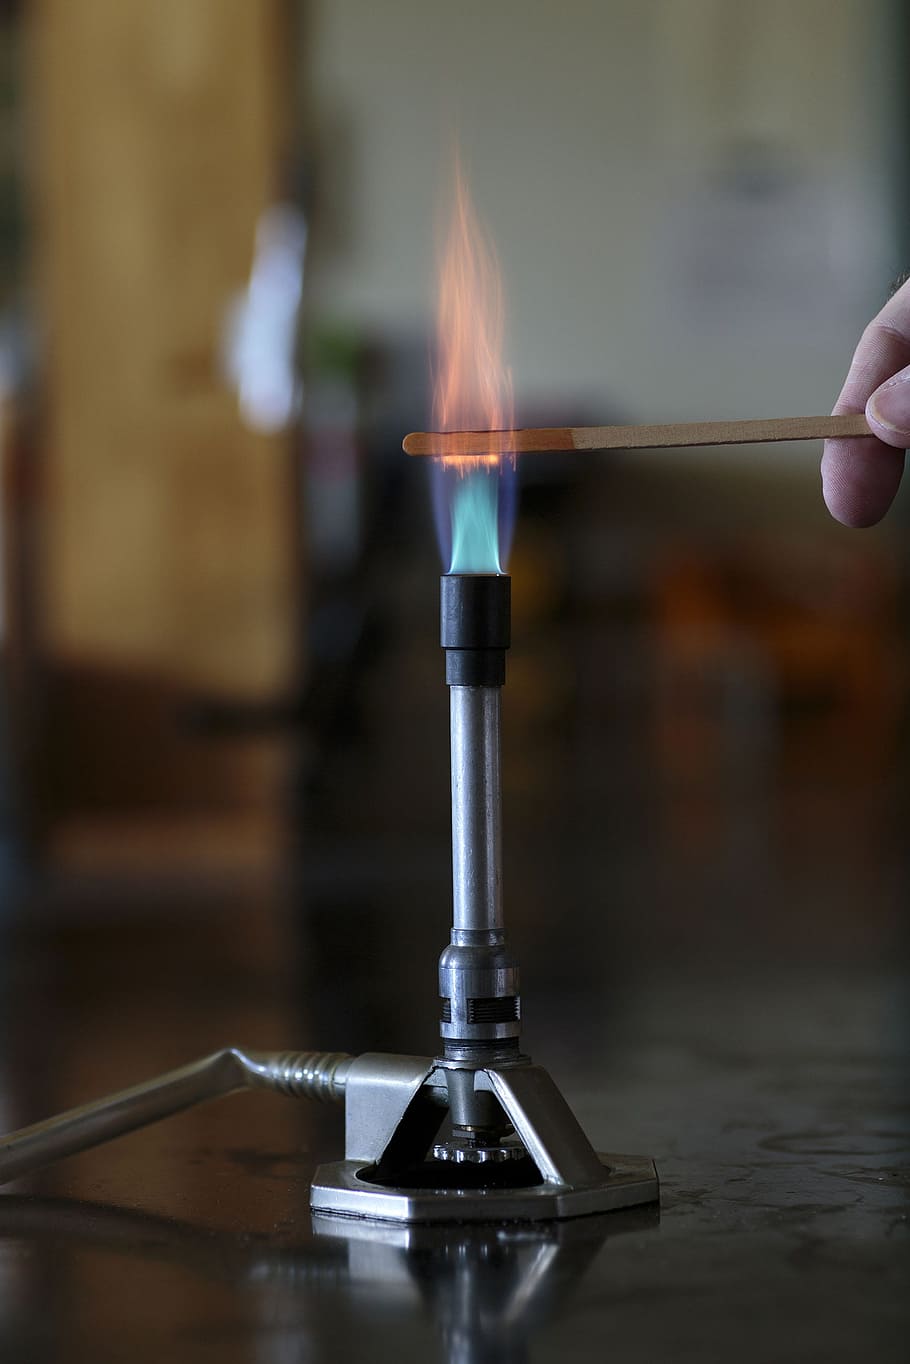 cobalt solution, burning, wooden, splint, bunsen burner flame, flame., chemistry, flame, metals, salts